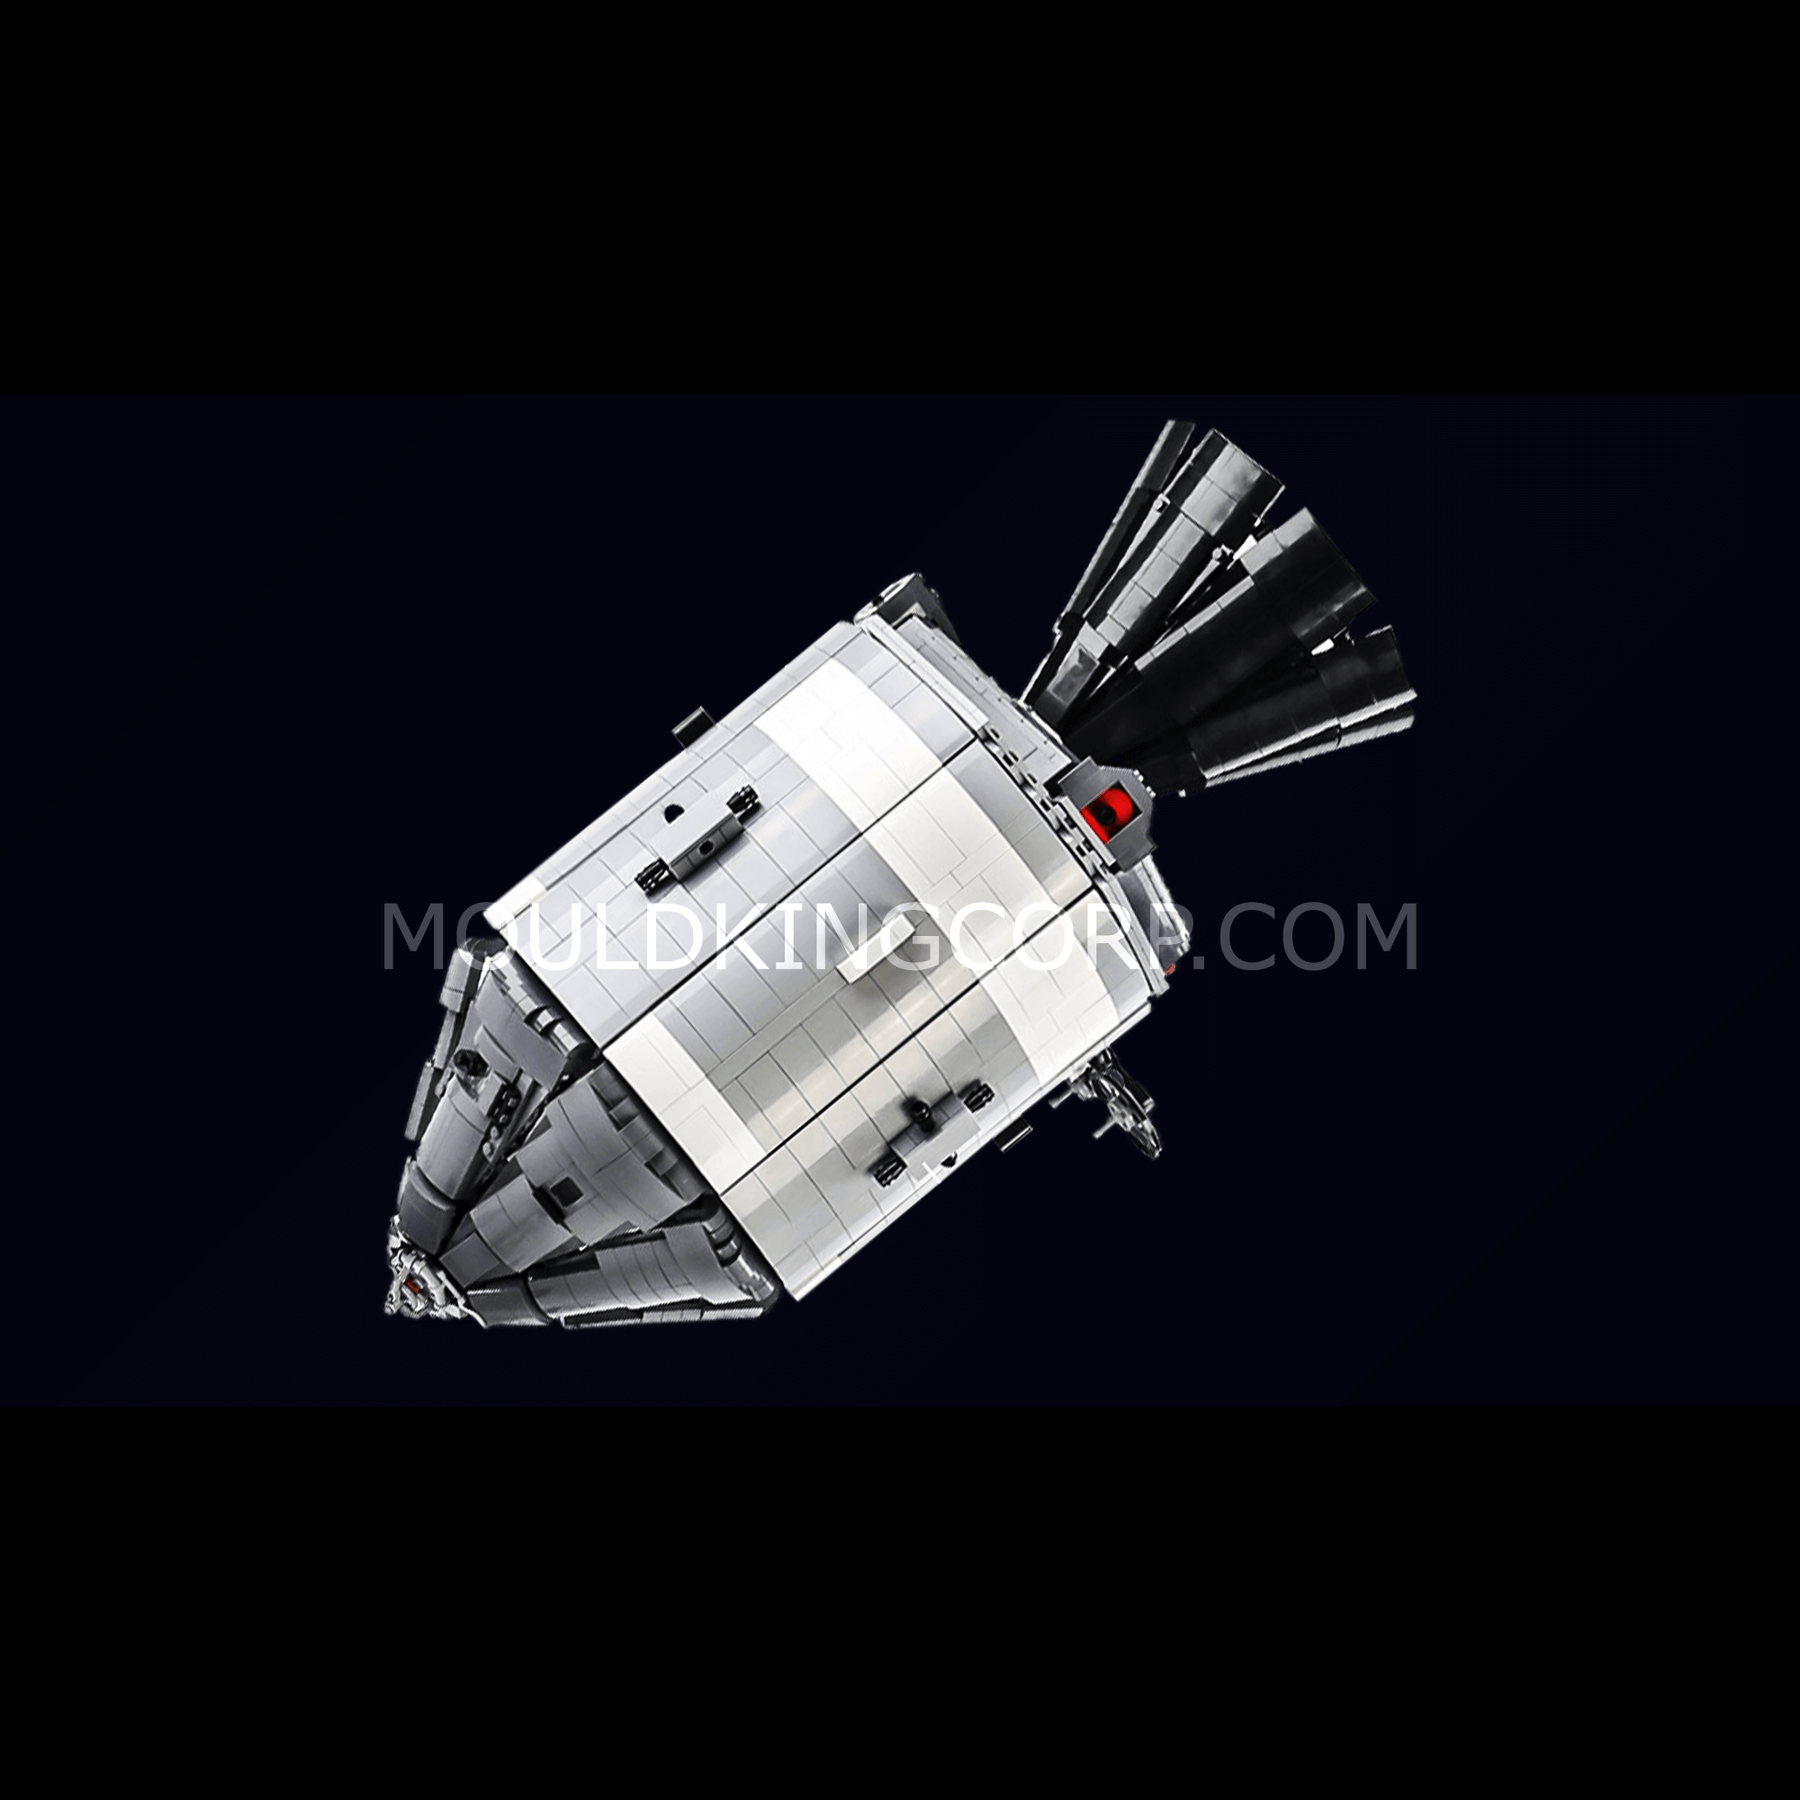 Mould King Apollo 11 rymdfarkost - Elgiganten